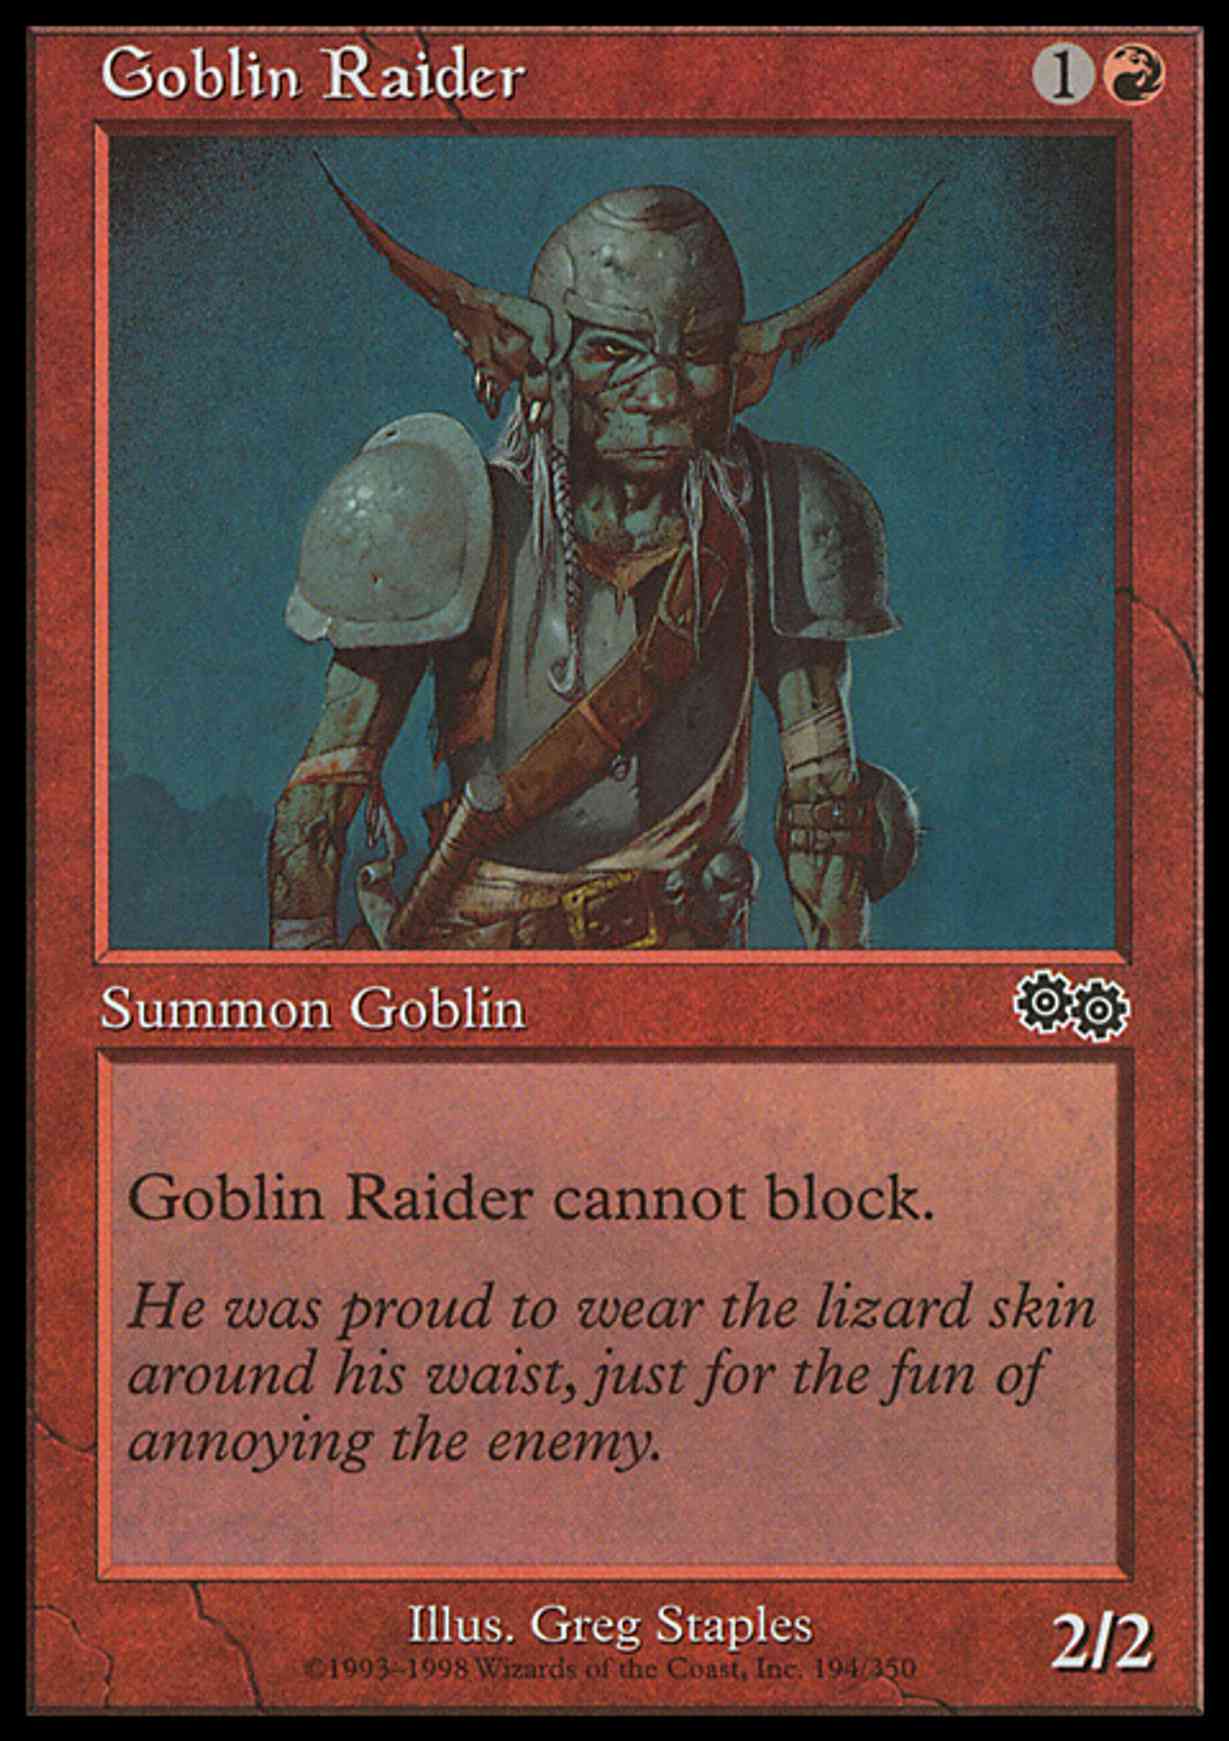 Goblin Raider magic card front